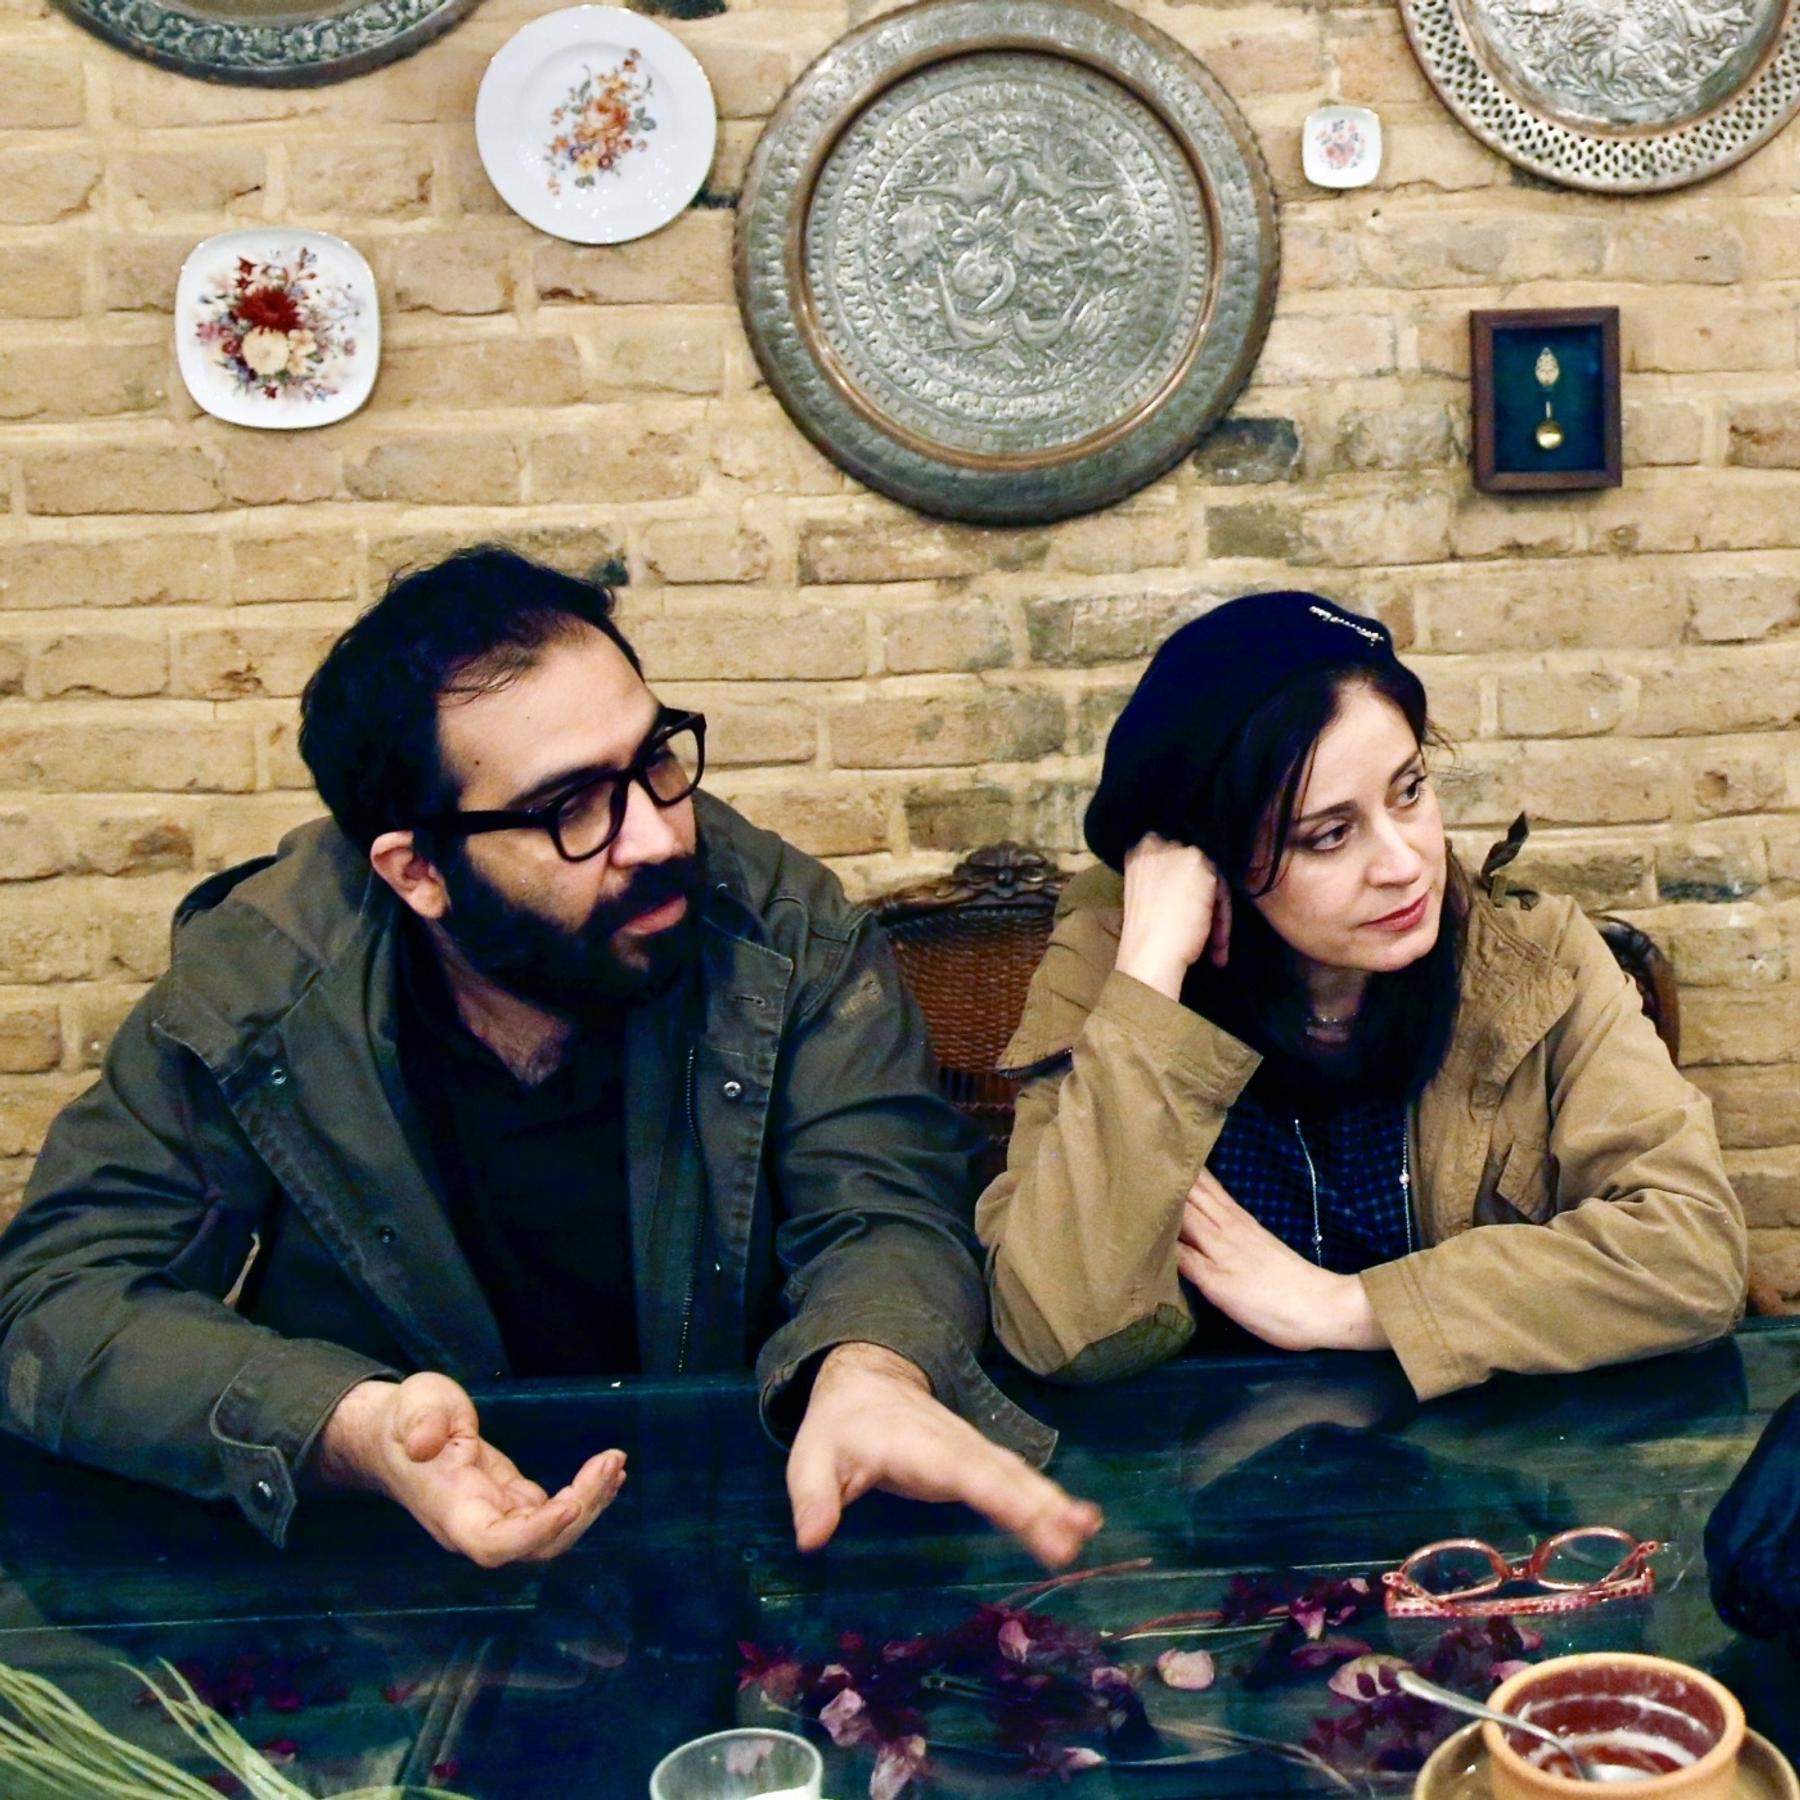 Ein kleines Stück vom Kuchen: Geteilte Meinungen über einen iranischen Film